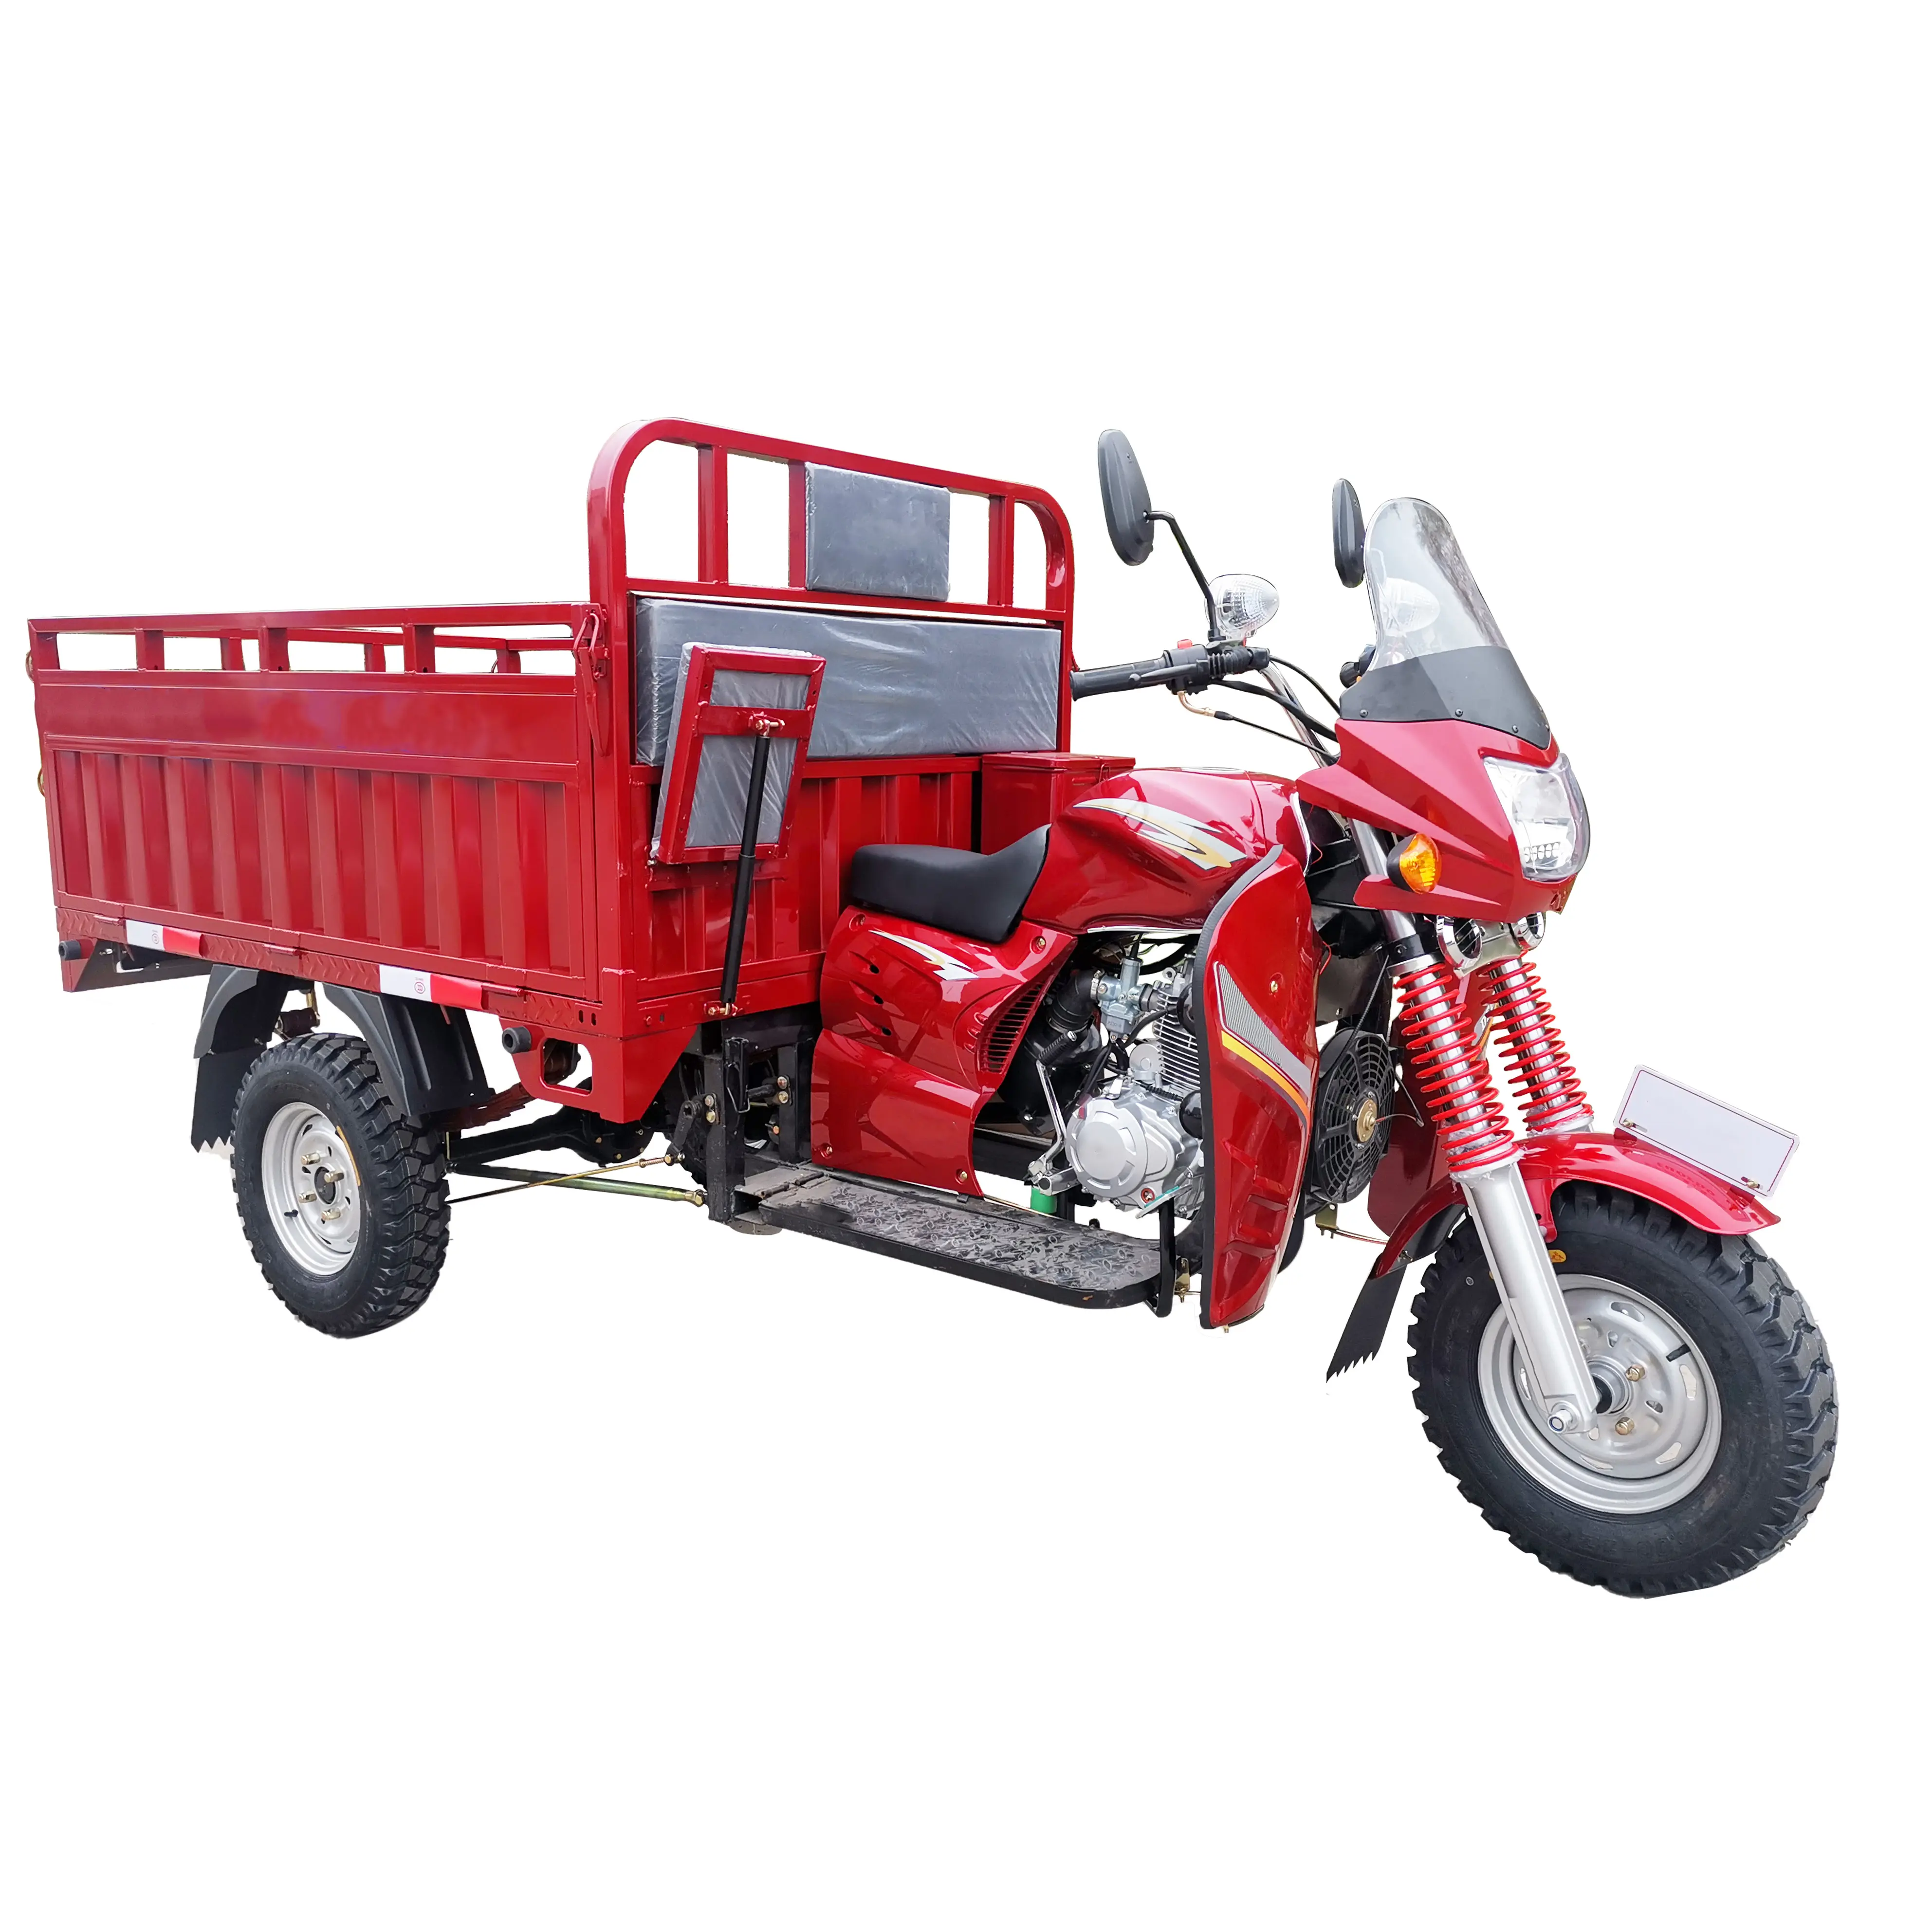 Sıcak satış çin YAOLON toptan en iyi fiyat 200cc su soğutmalı üç tekerlekli kargo motosiklet